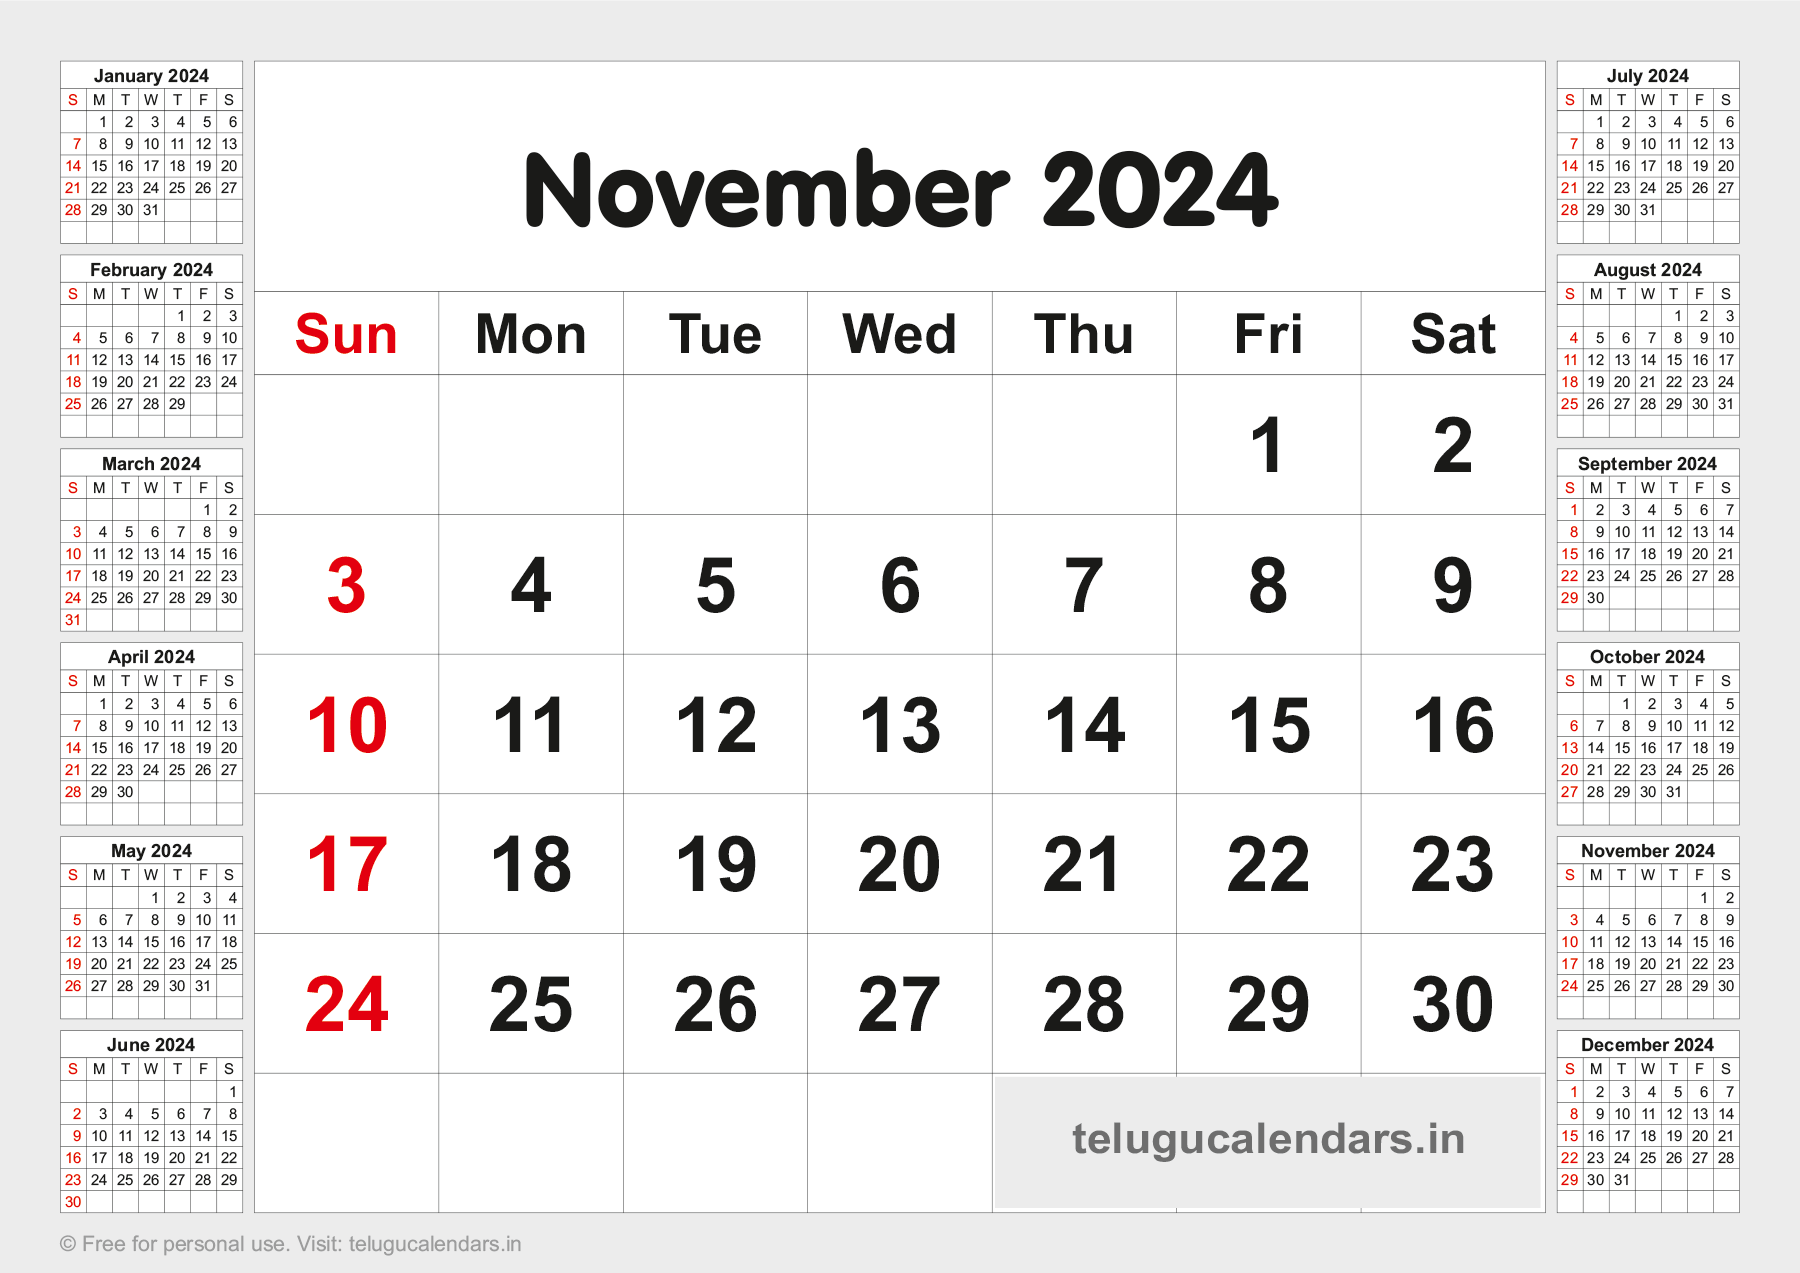 Telugu Blank Calendar 2024 November 2023 Telugu Calendar PDF